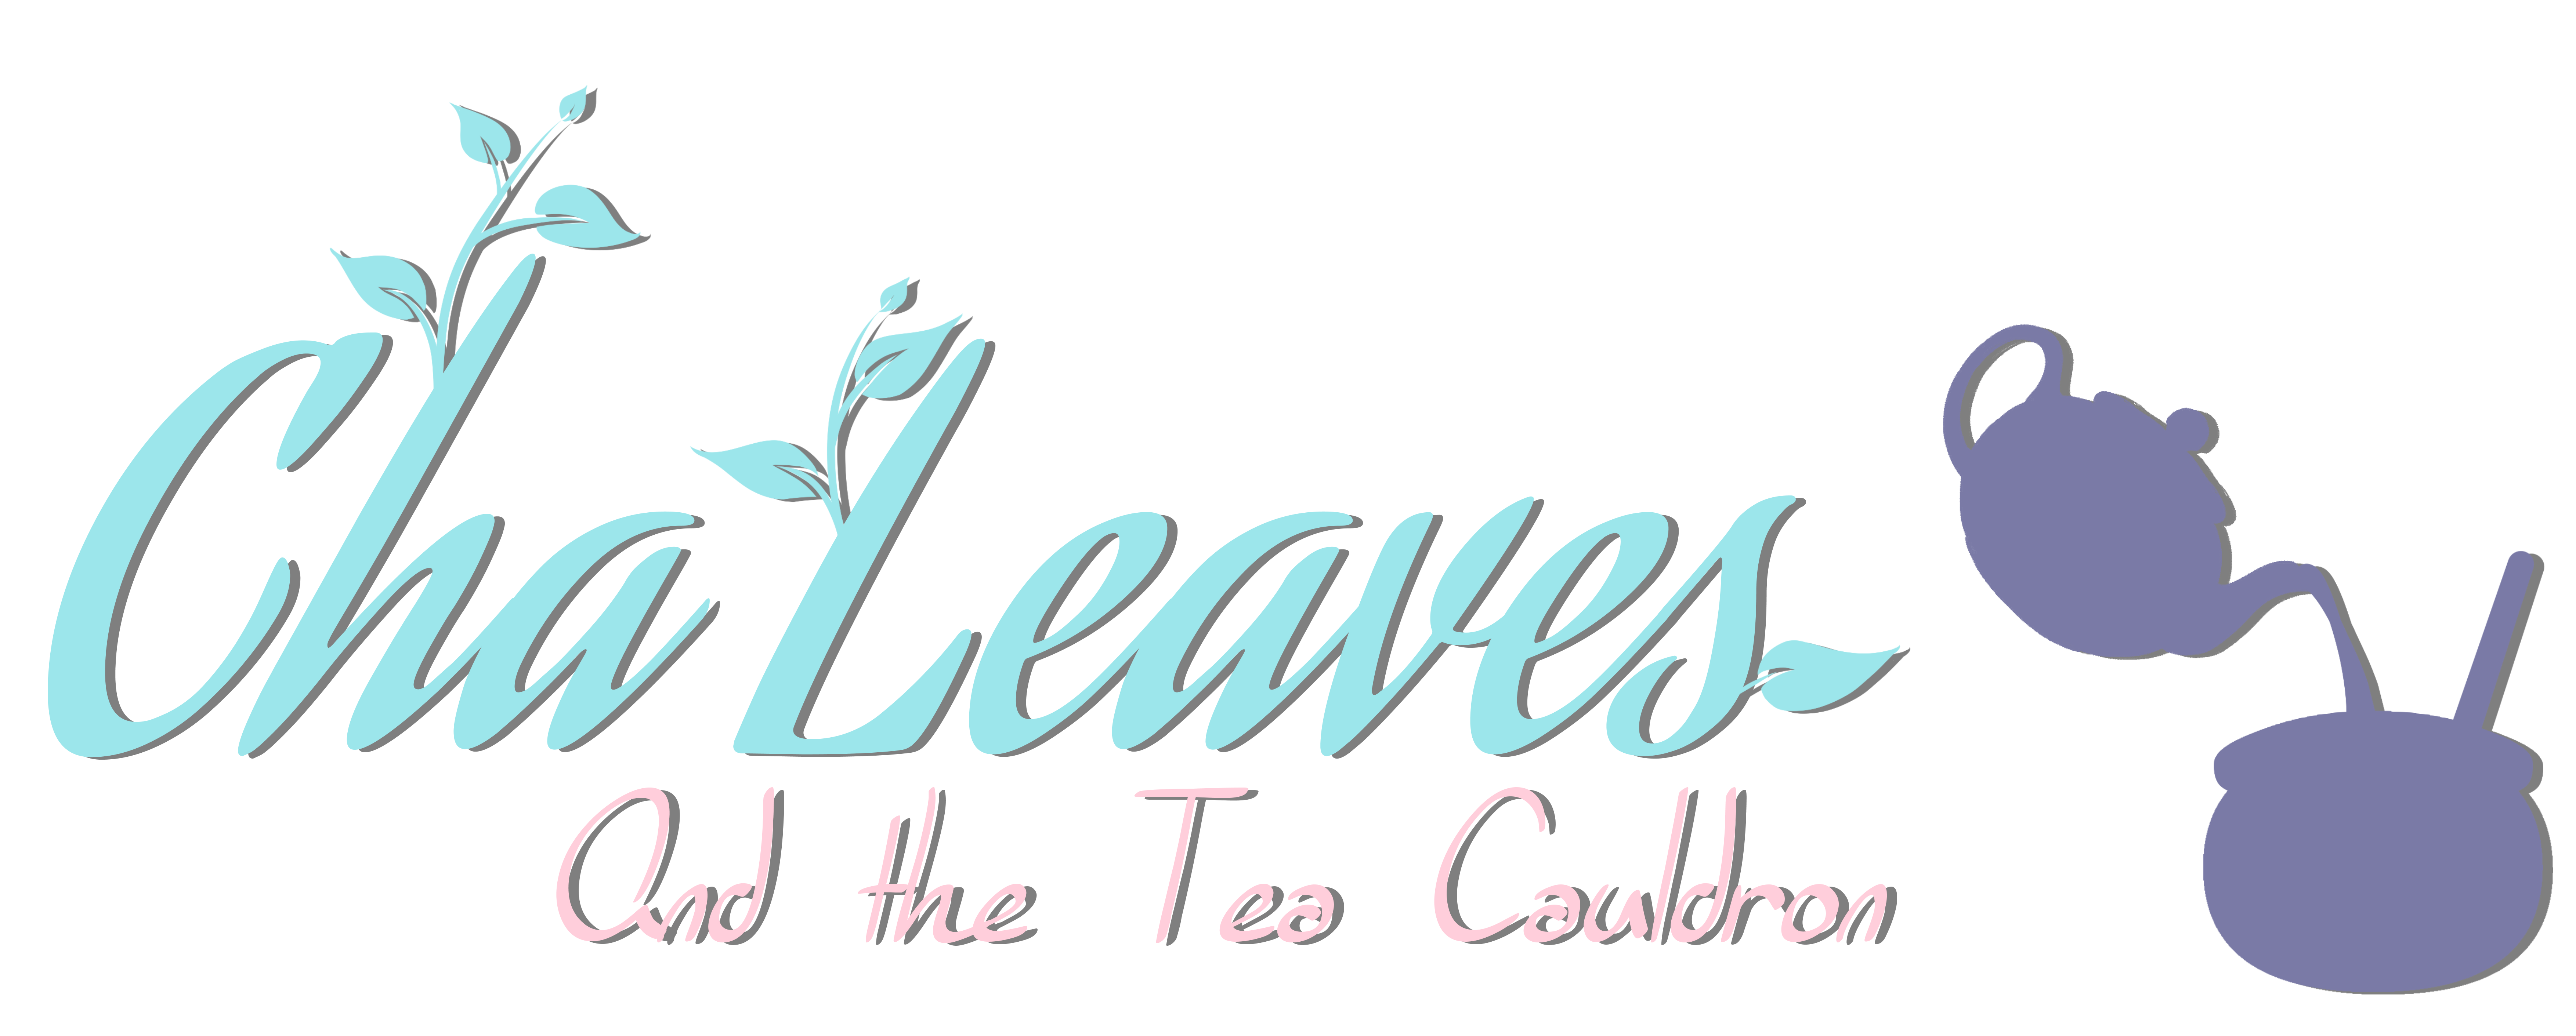 Cha Leaves and the Tea Cauldron